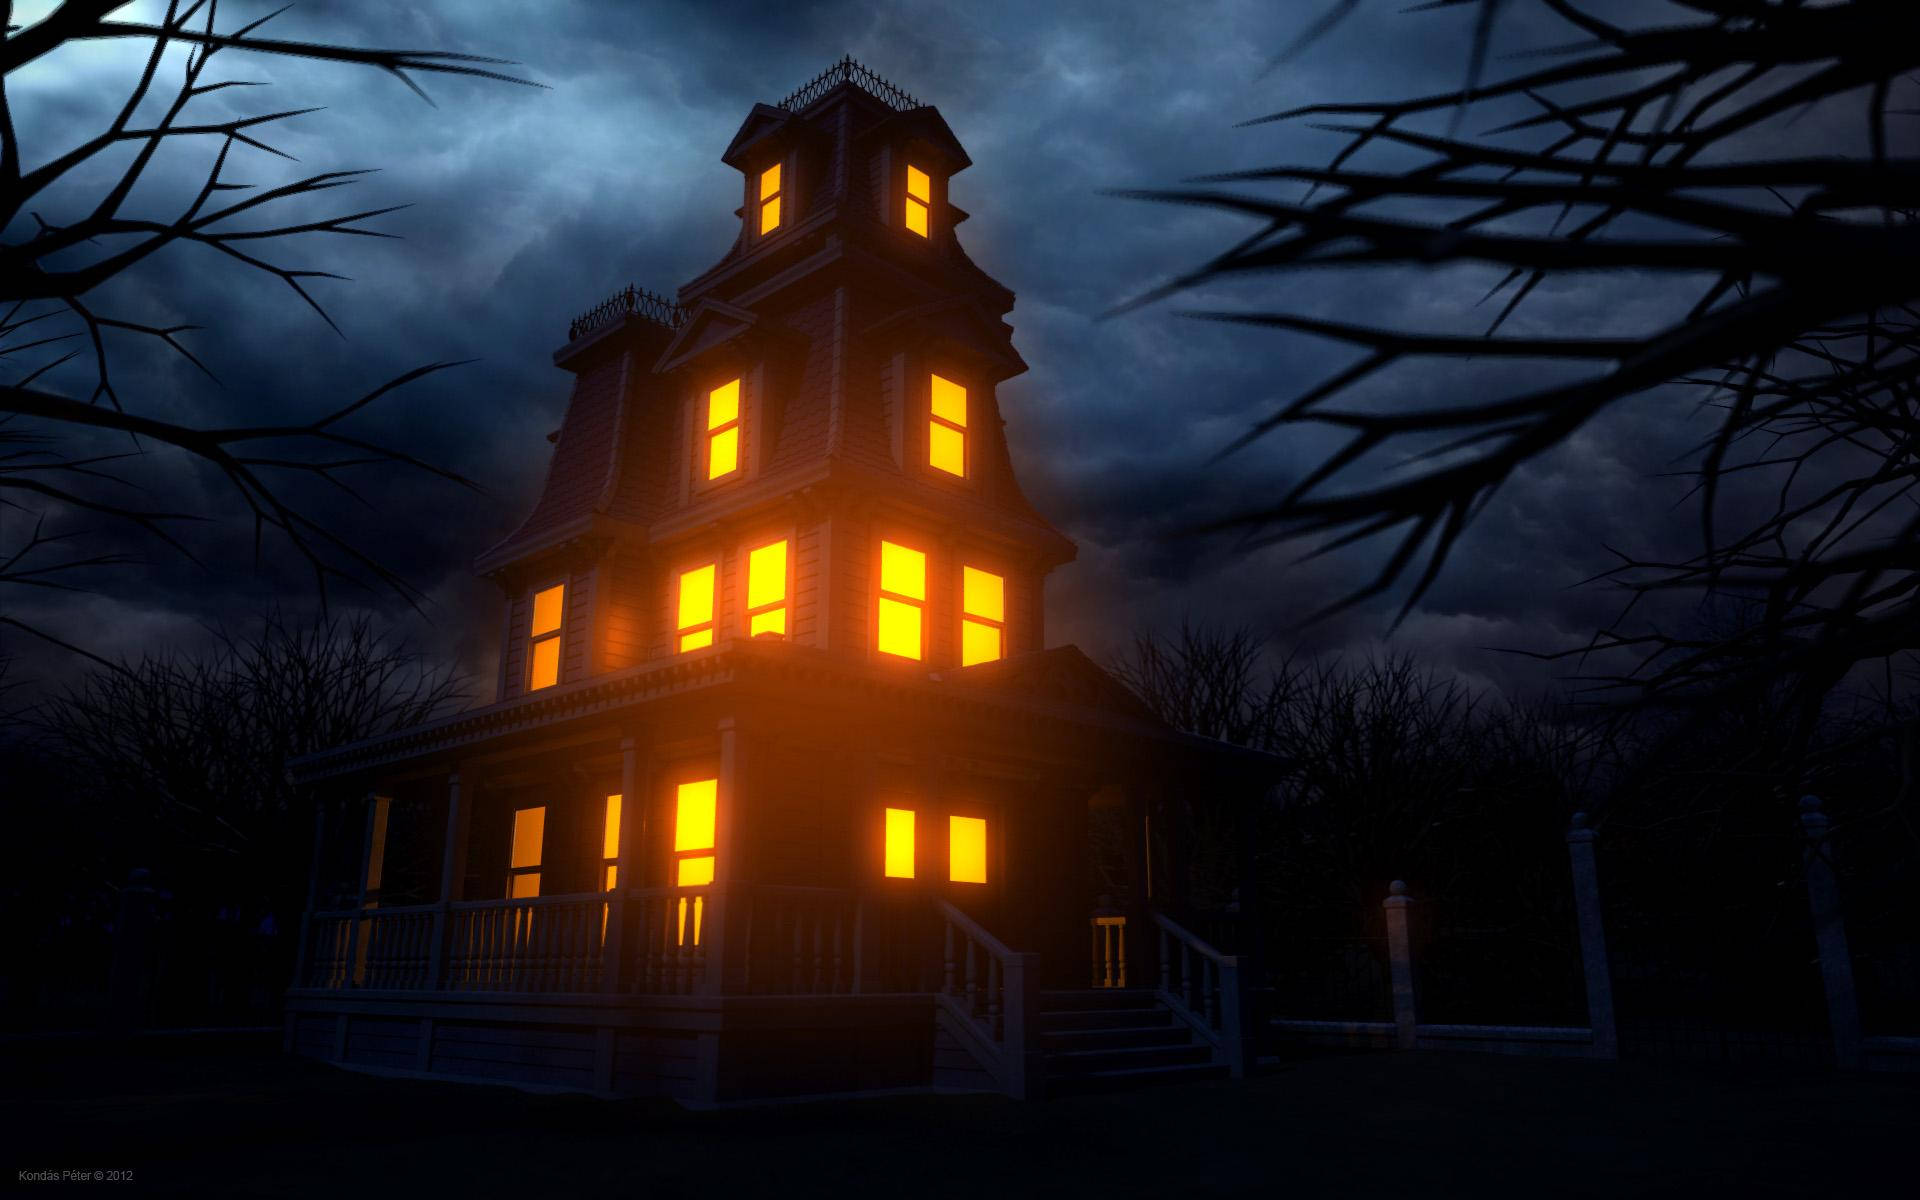 Bienvenidosa La Oscura Y Misteriosa Casa Encantada En La Noche De Halloween. Fondo de pantalla